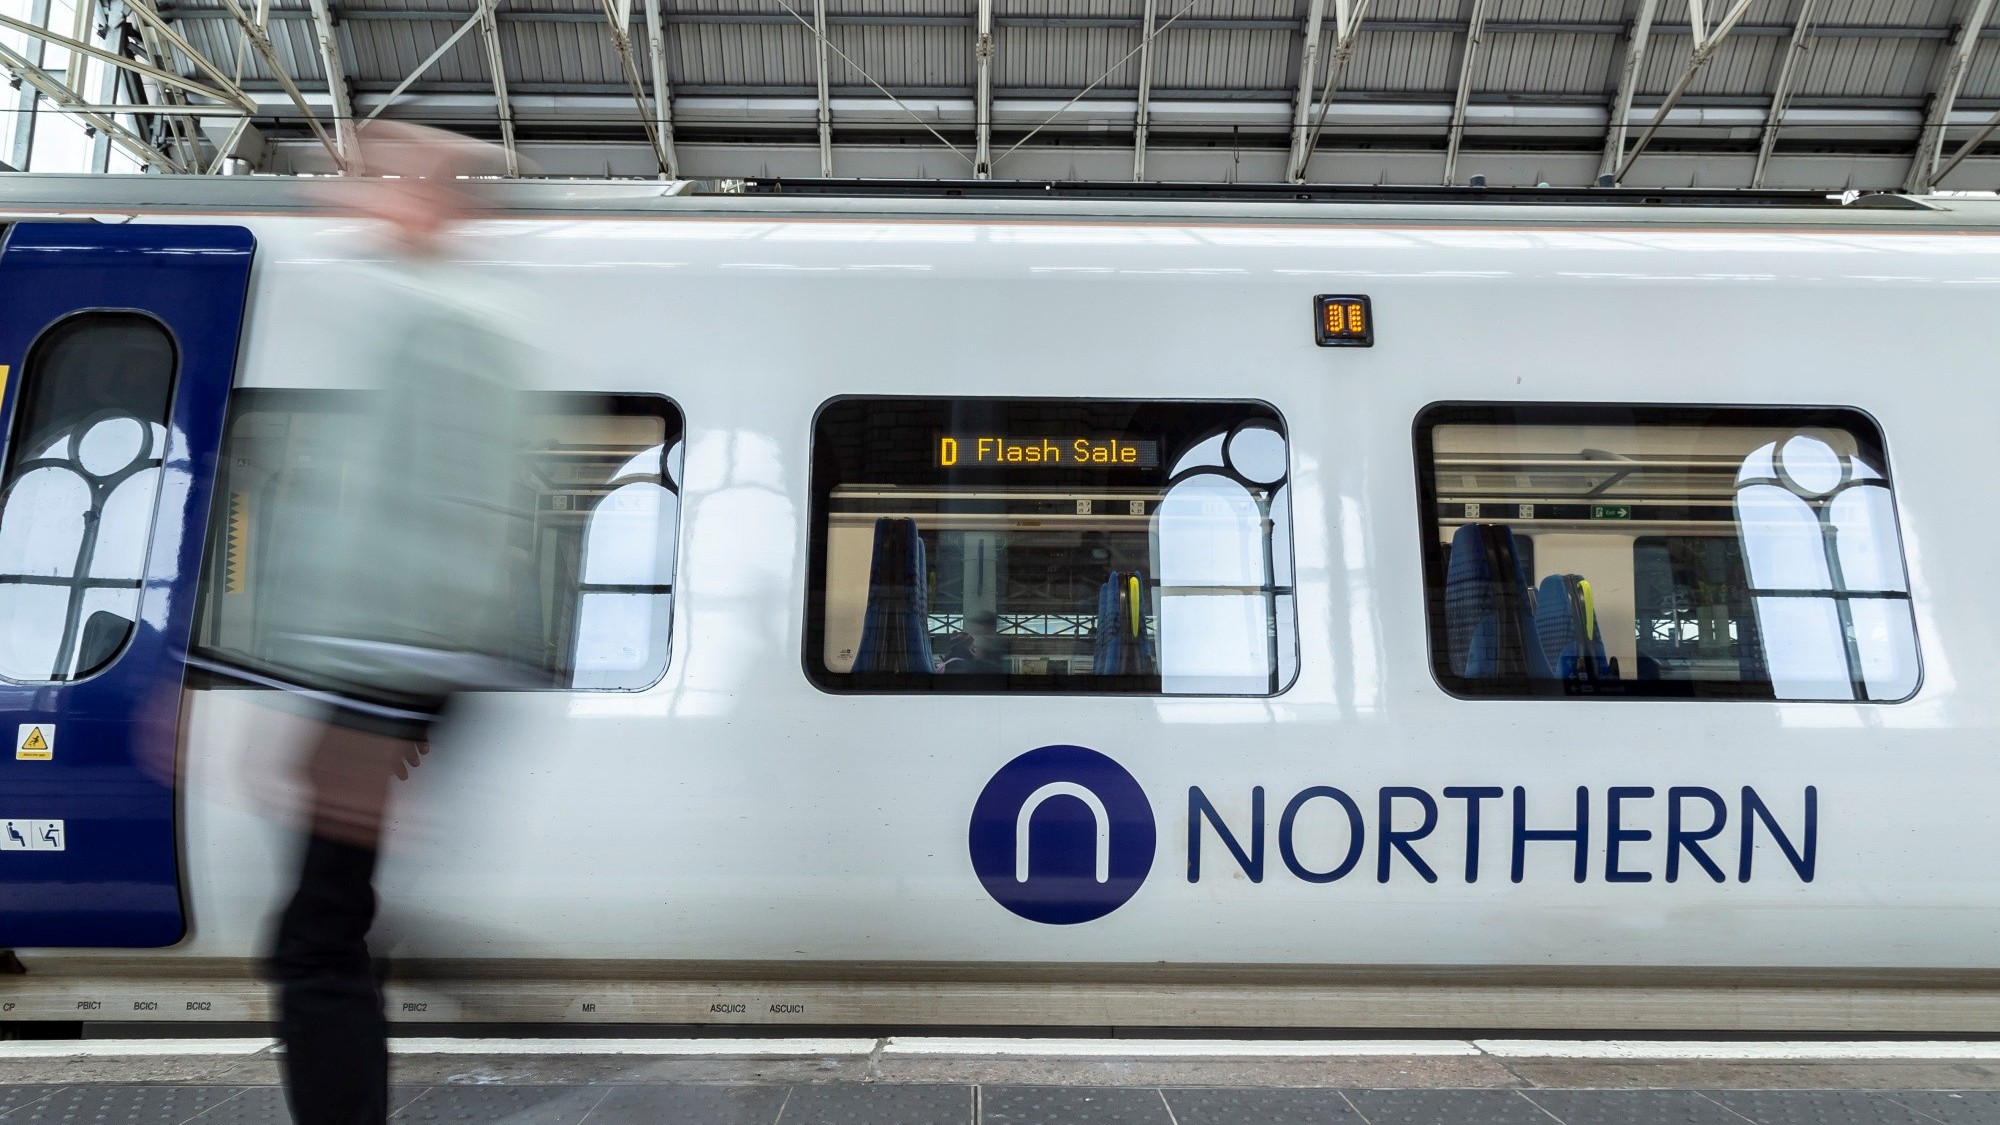 Image shows passenger alongside Flash Sale branded Northern train